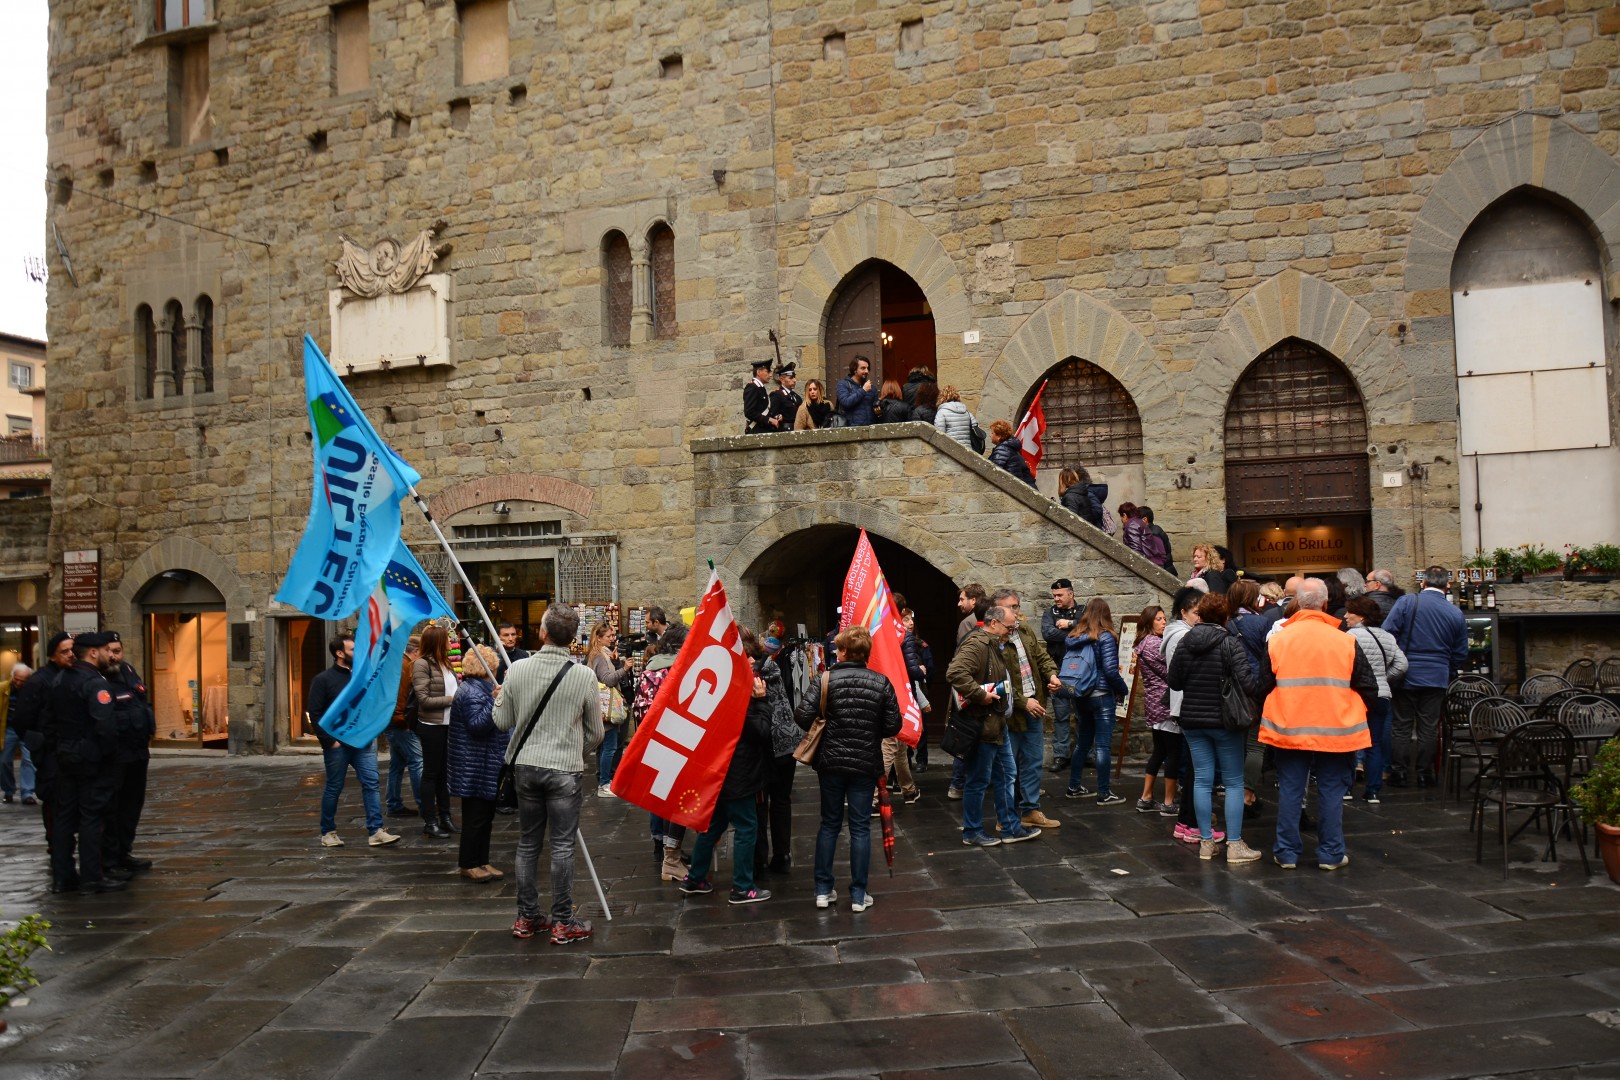 Lavoratrici della Cantarelli in piazza a Cortona per chiedere risposte sul loro futuro